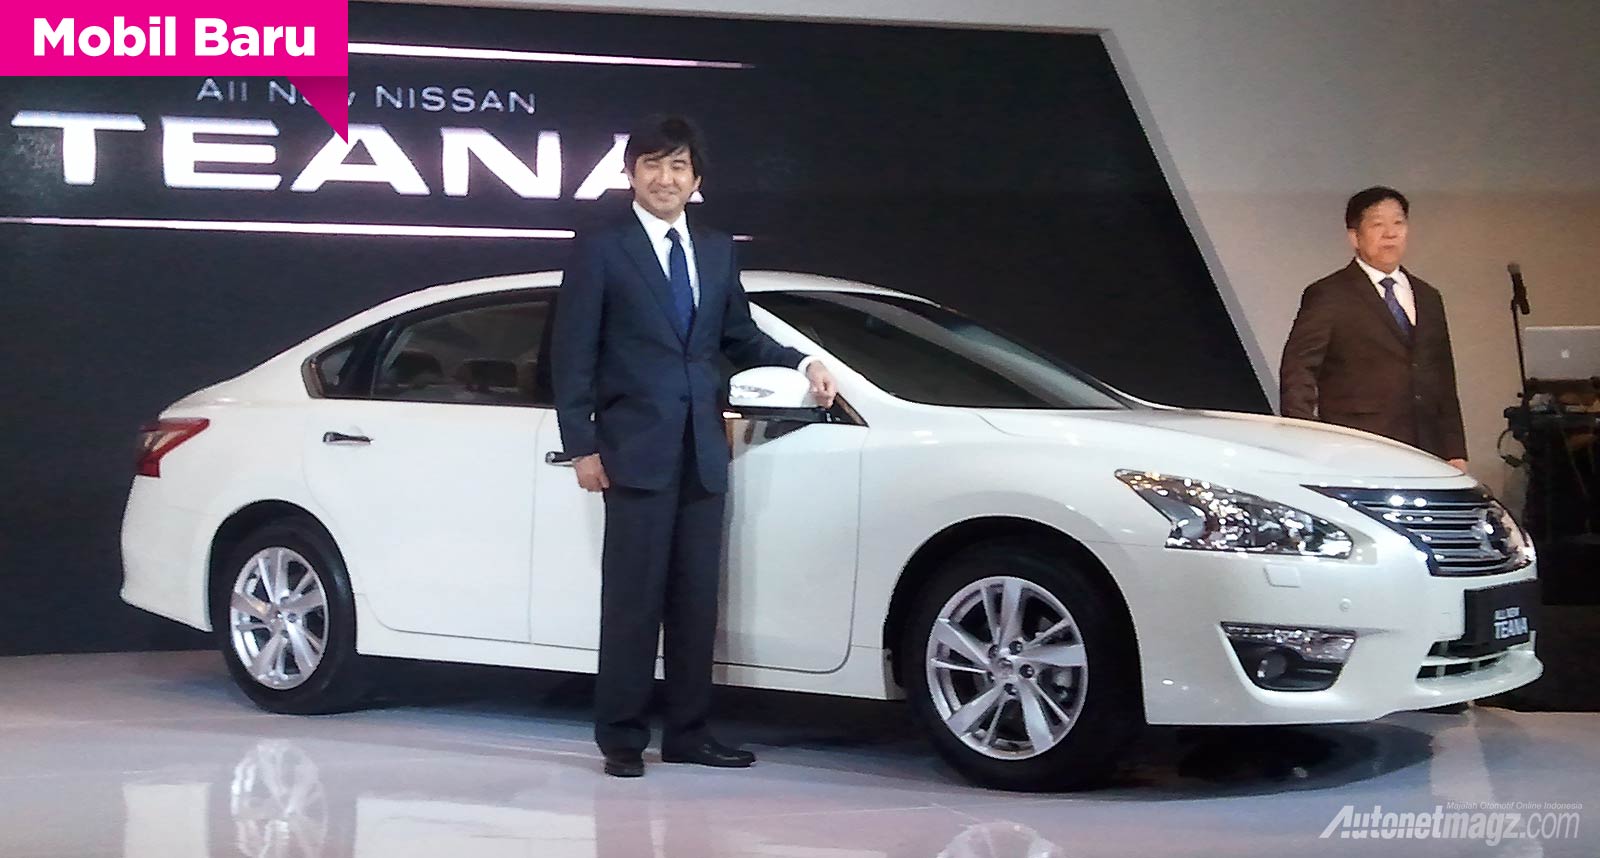 Mobil Baru, All New Nissan Teana 2014: All-New Nissan Teana Menggoda Eksekutif yang Ingin Tampil Beda